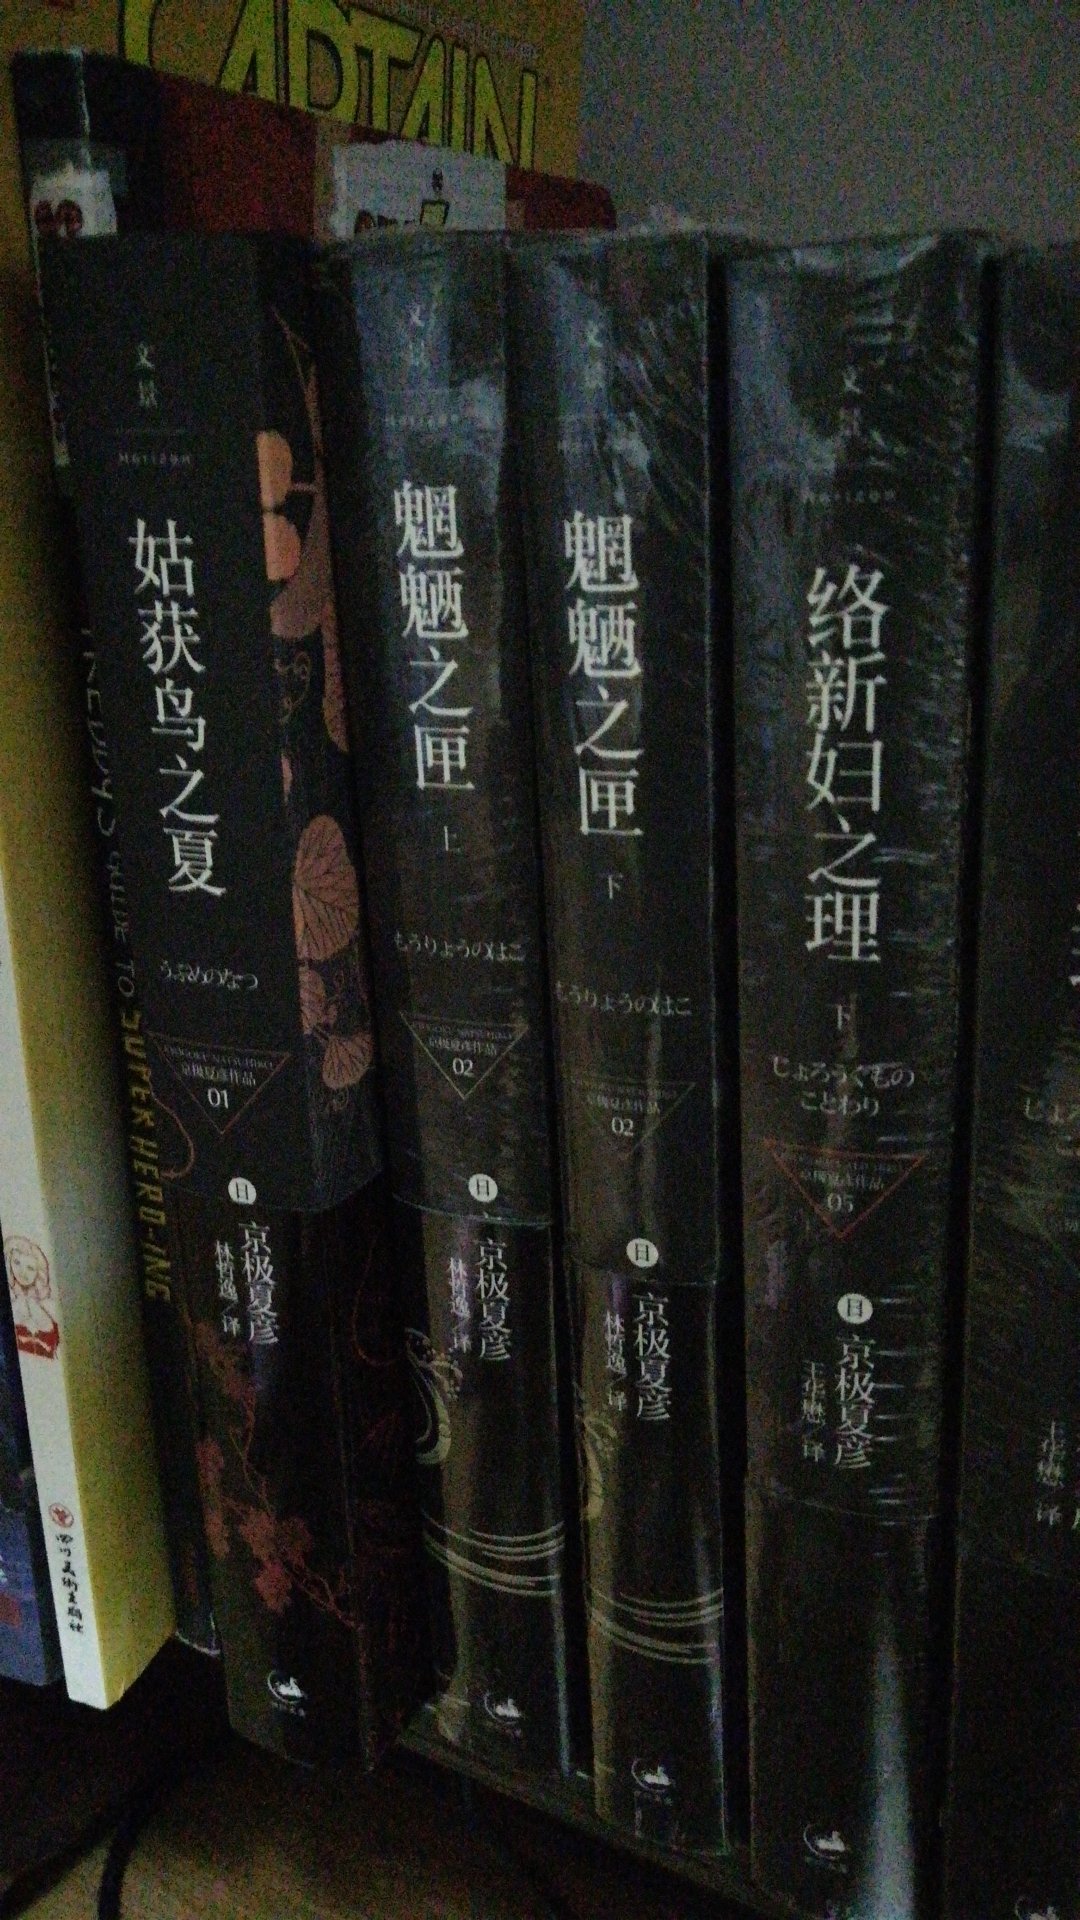 非常非常喜欢京极夏彦的书。非常喜欢，便宜。